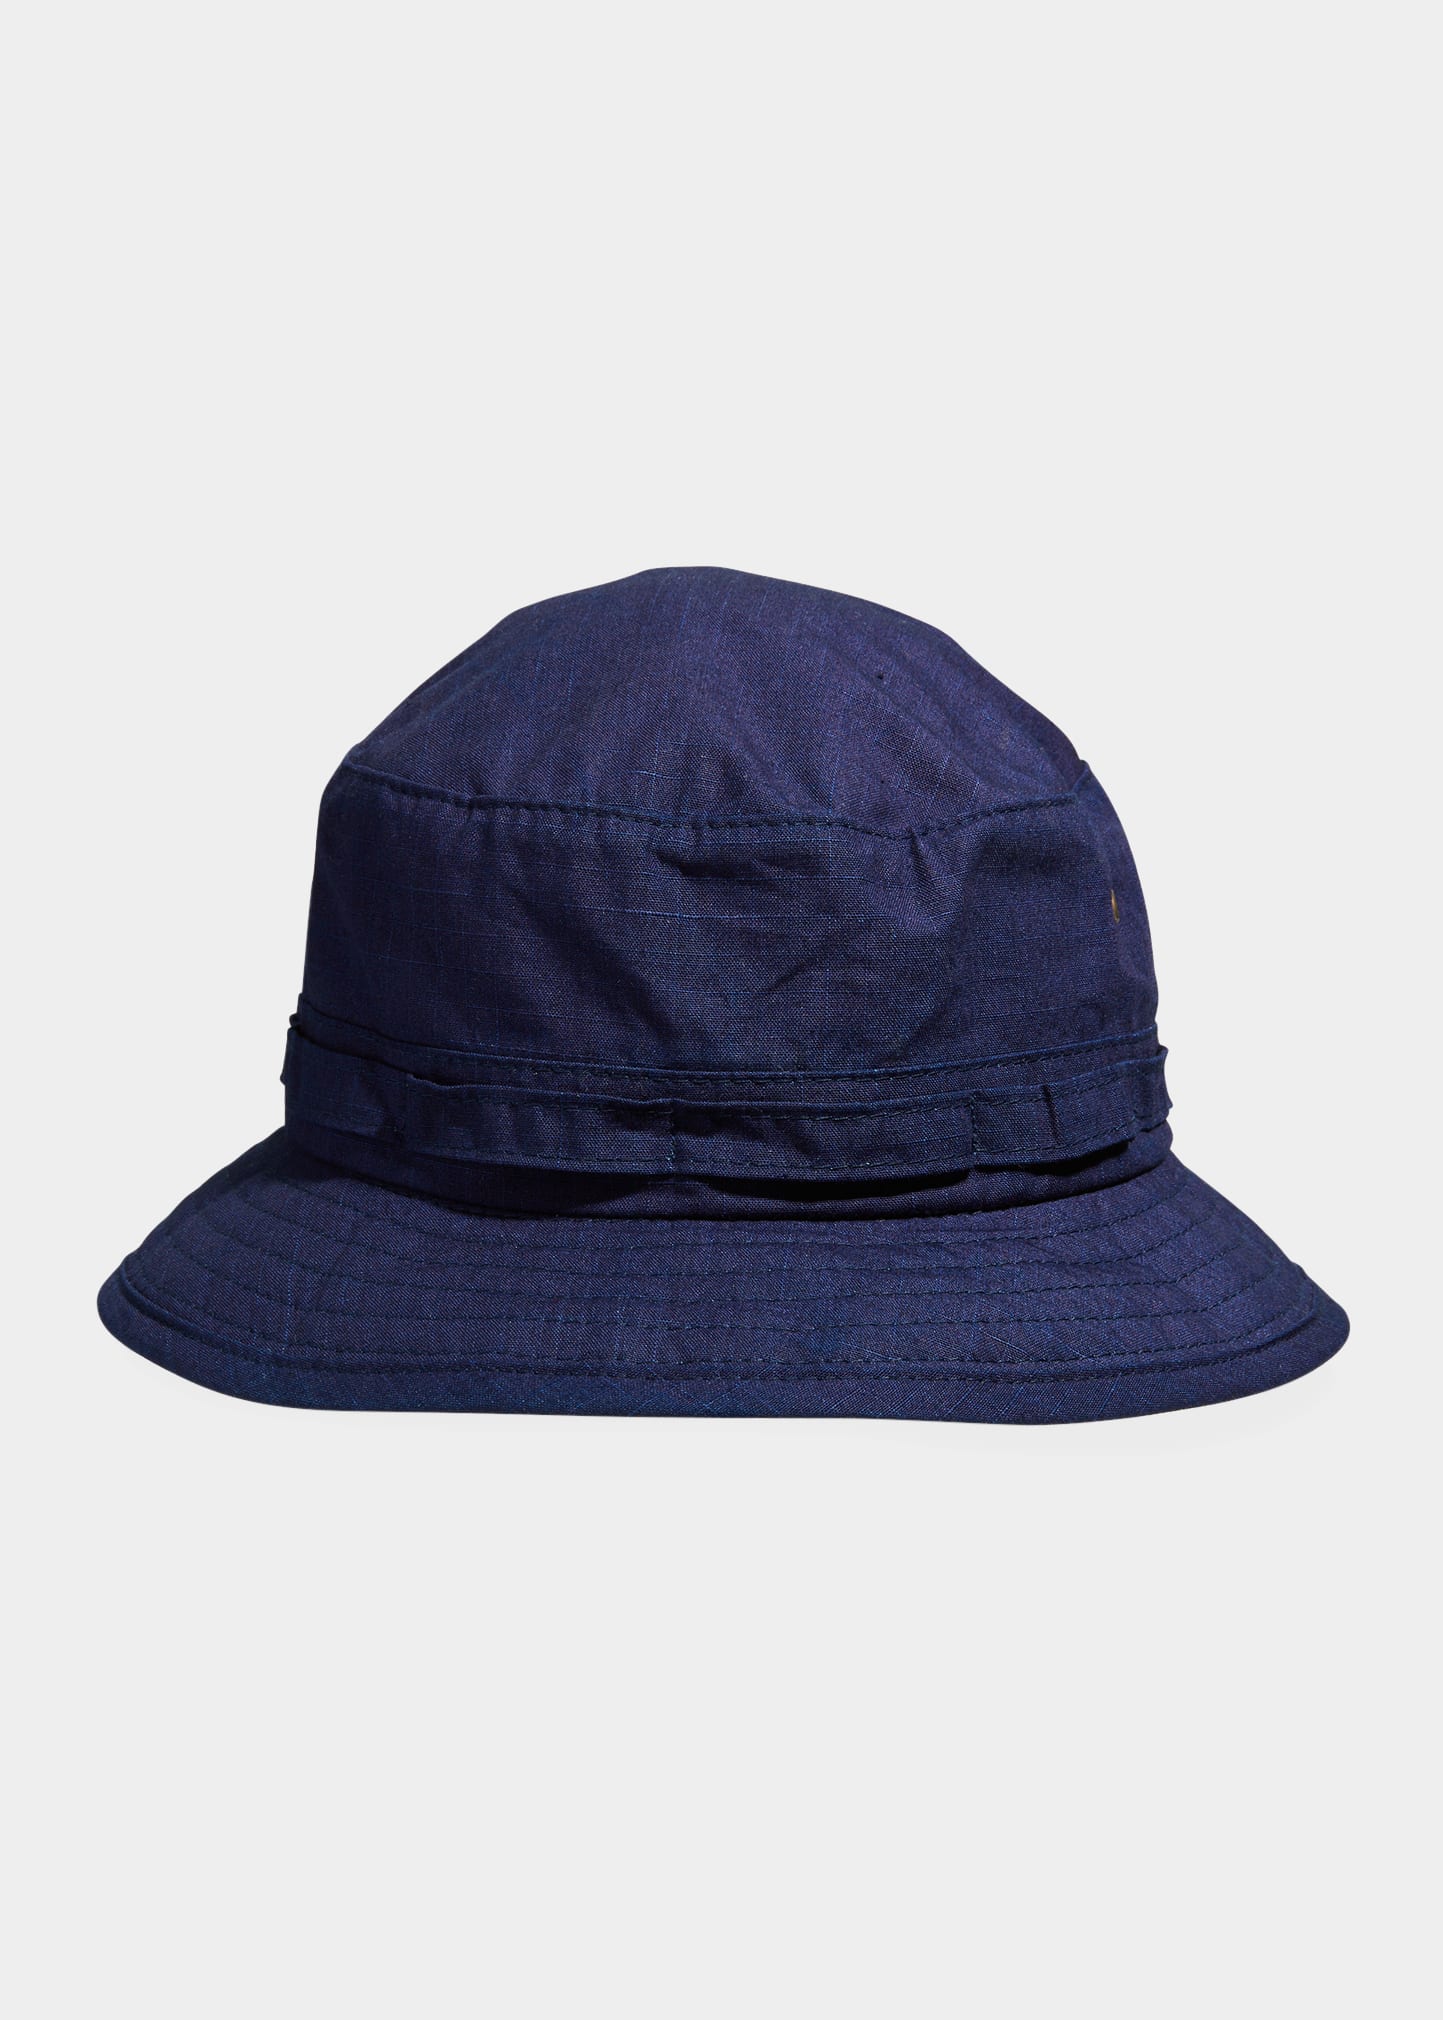 Men's Nylon Ripstop Drawstring Bucket Hat